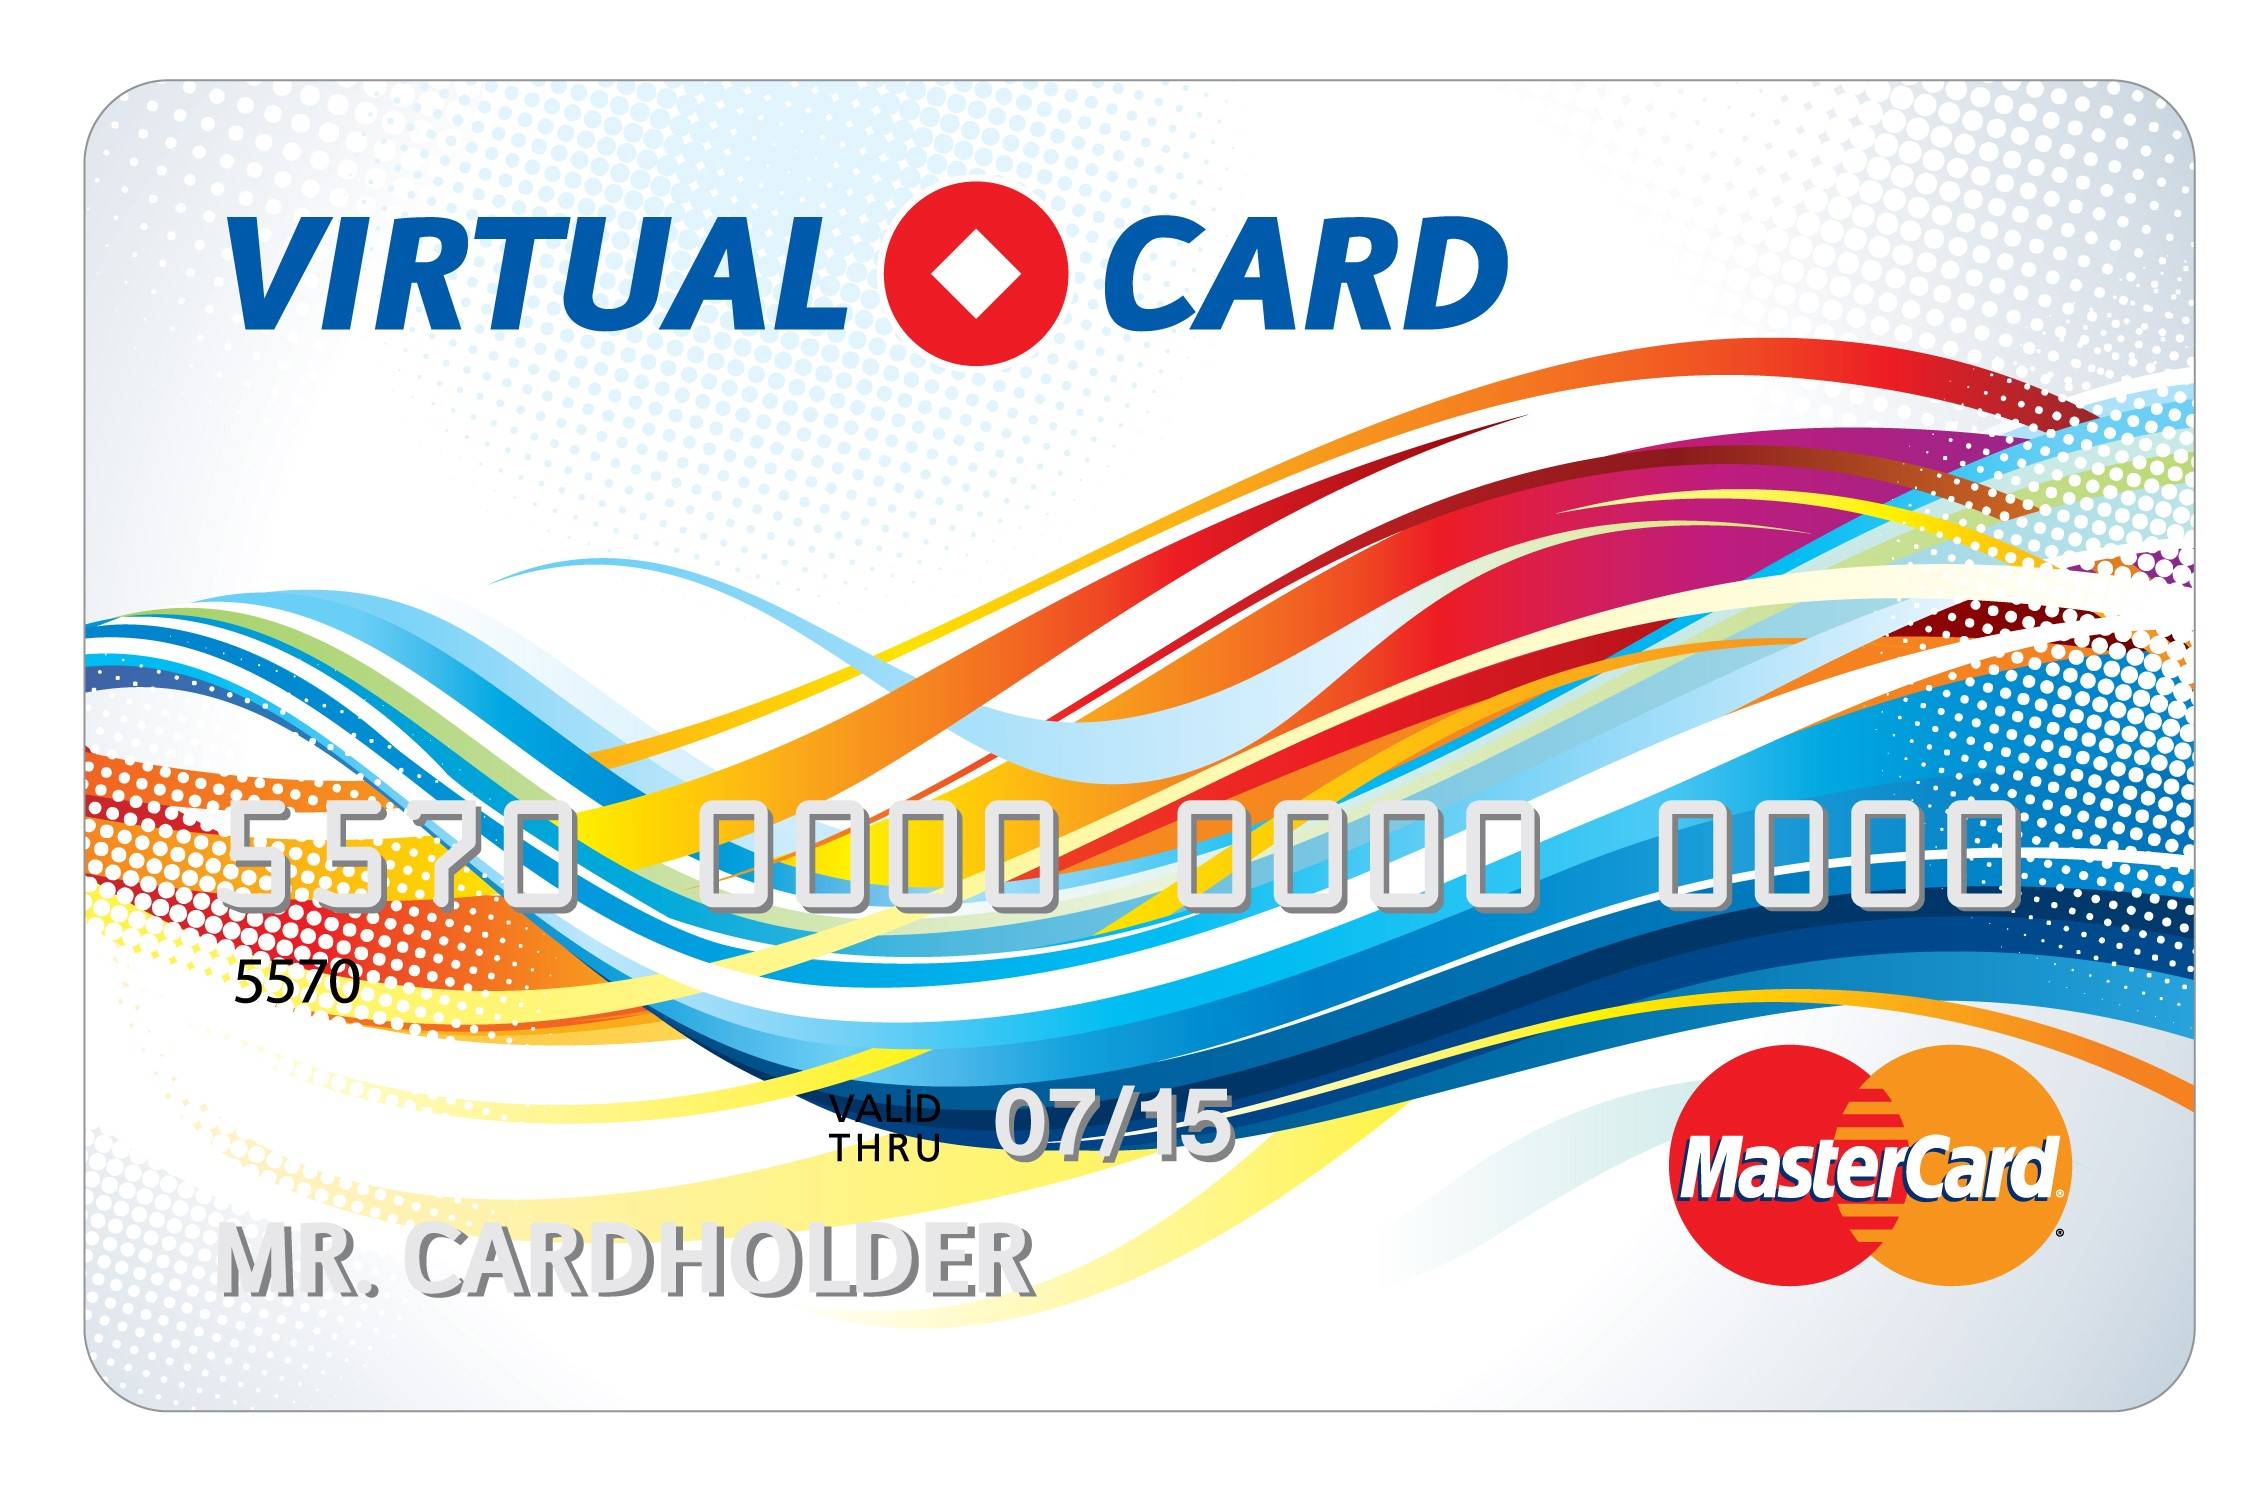 Виртуальные карты visa, mastercard + обзор виртуалки сбербанка | финансы для людей